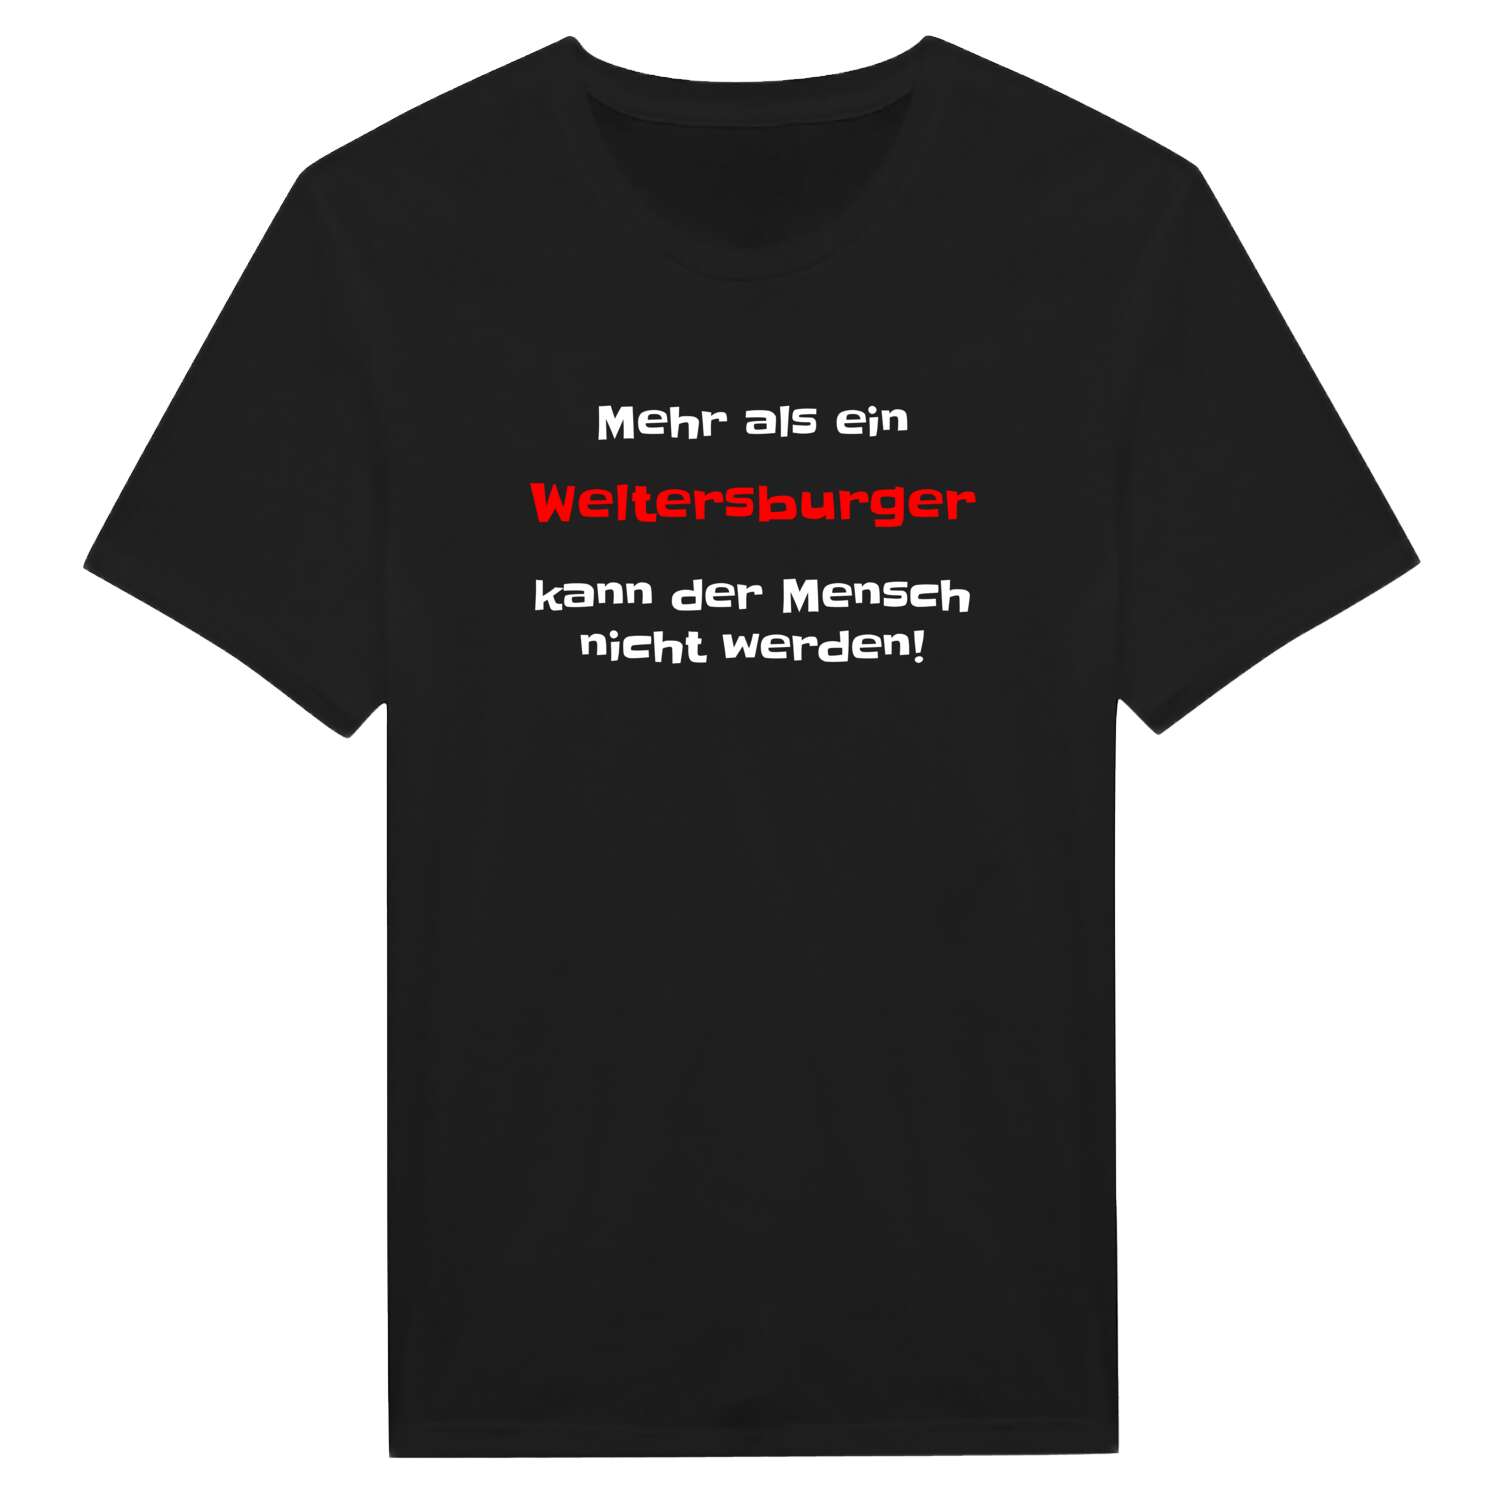 Weltersburg T-Shirt »Mehr als ein«